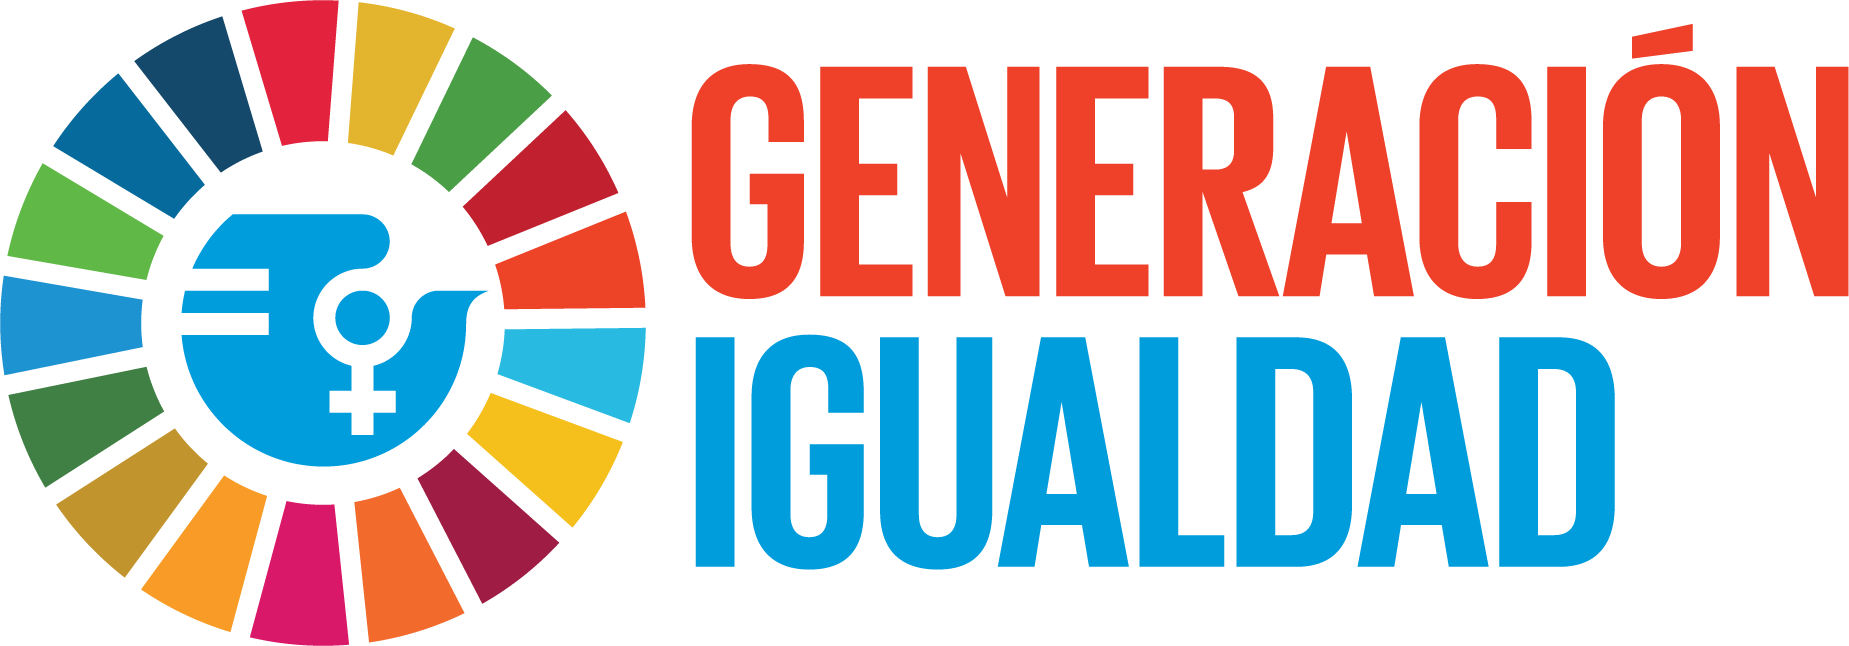 Generación Igualdad: Por los derechos de las mujeres y un futuro igualitario